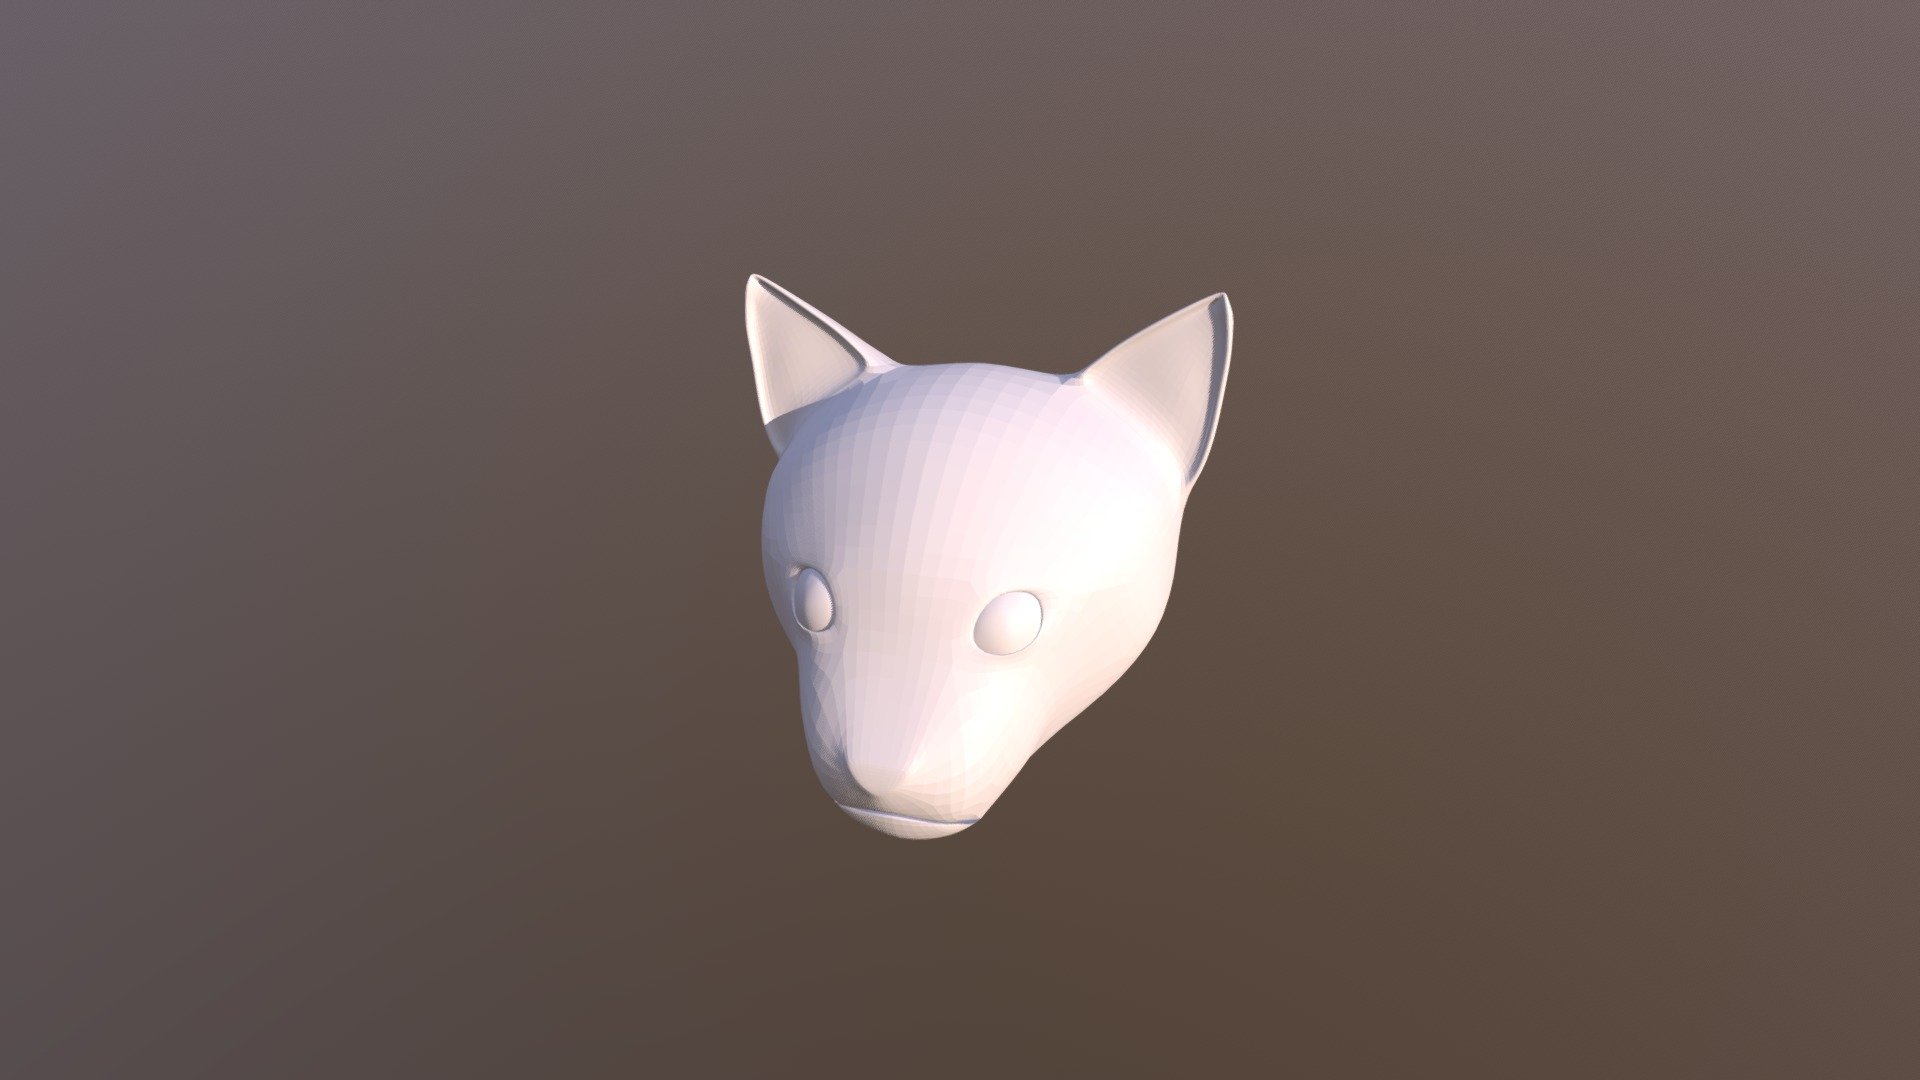 Cat Head